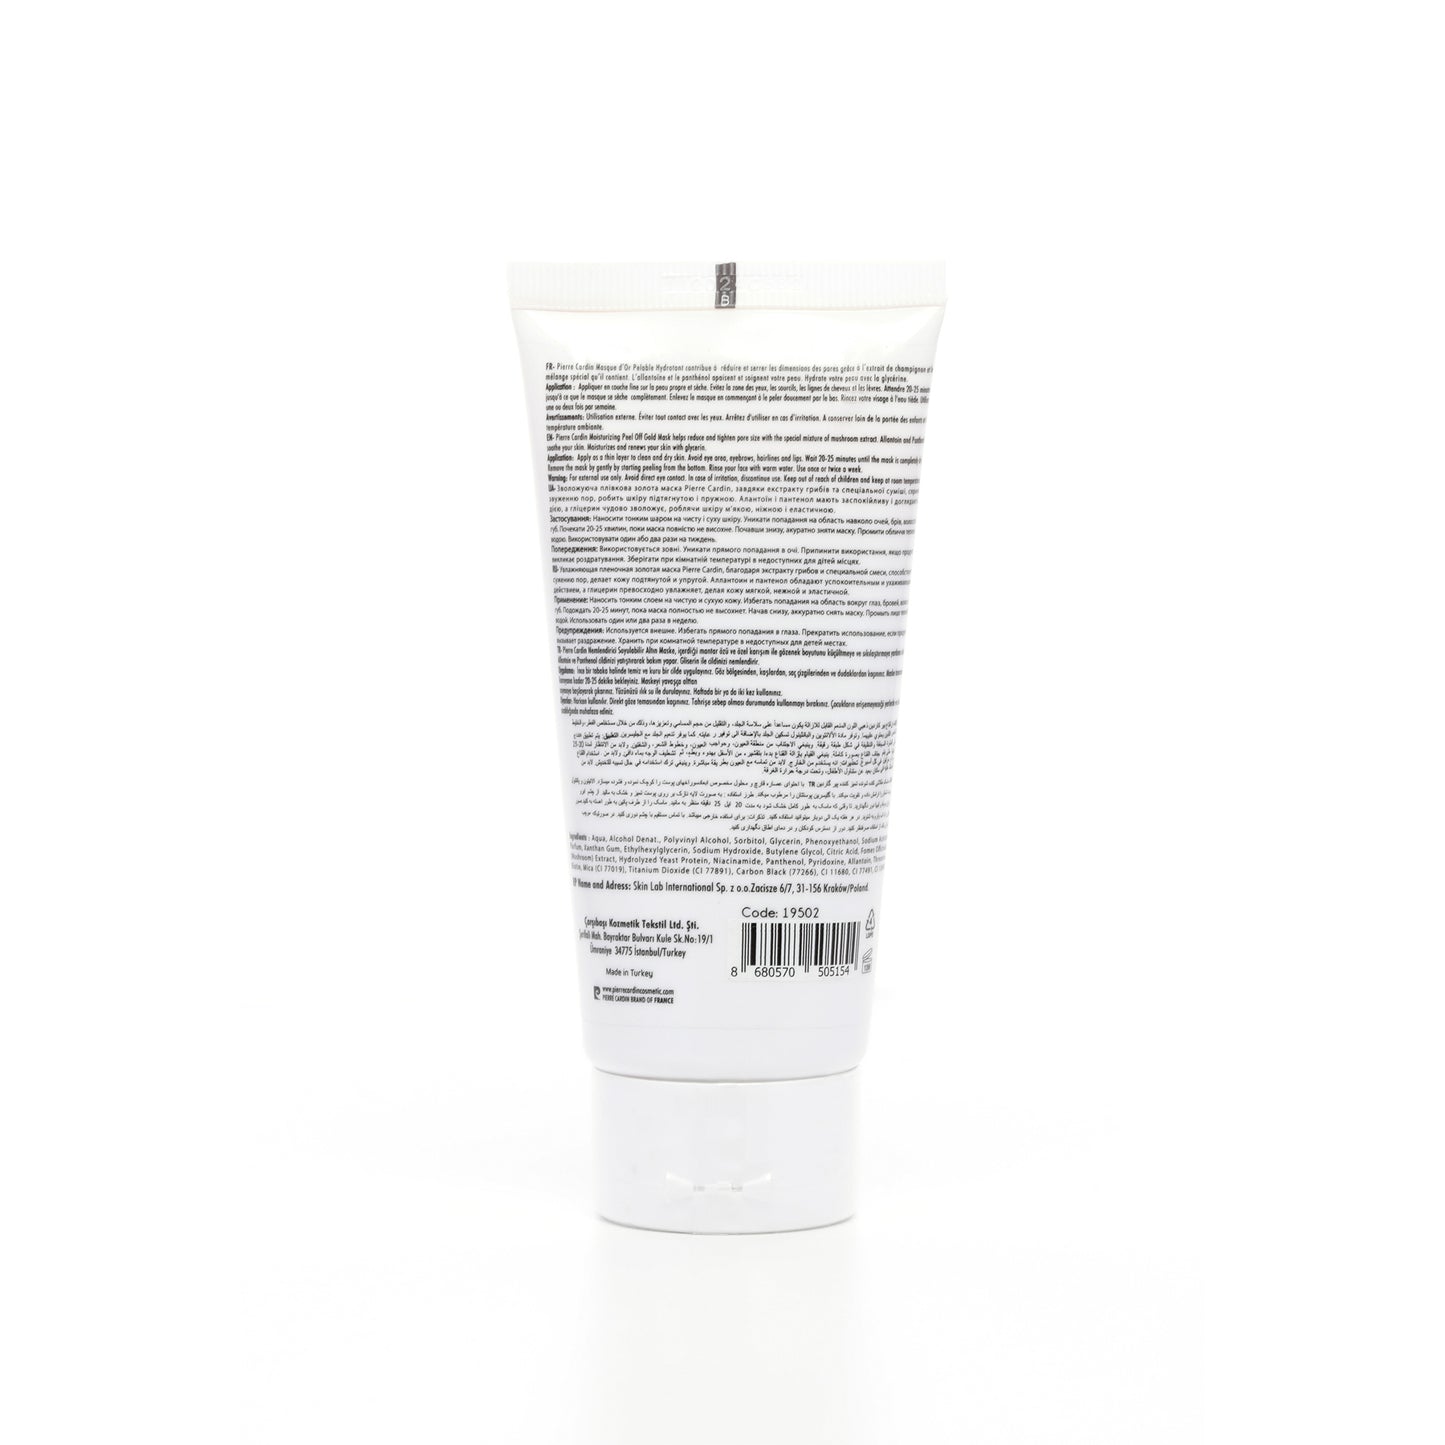 Pierre Cardin | Masque Peel Off Or | 80 ml